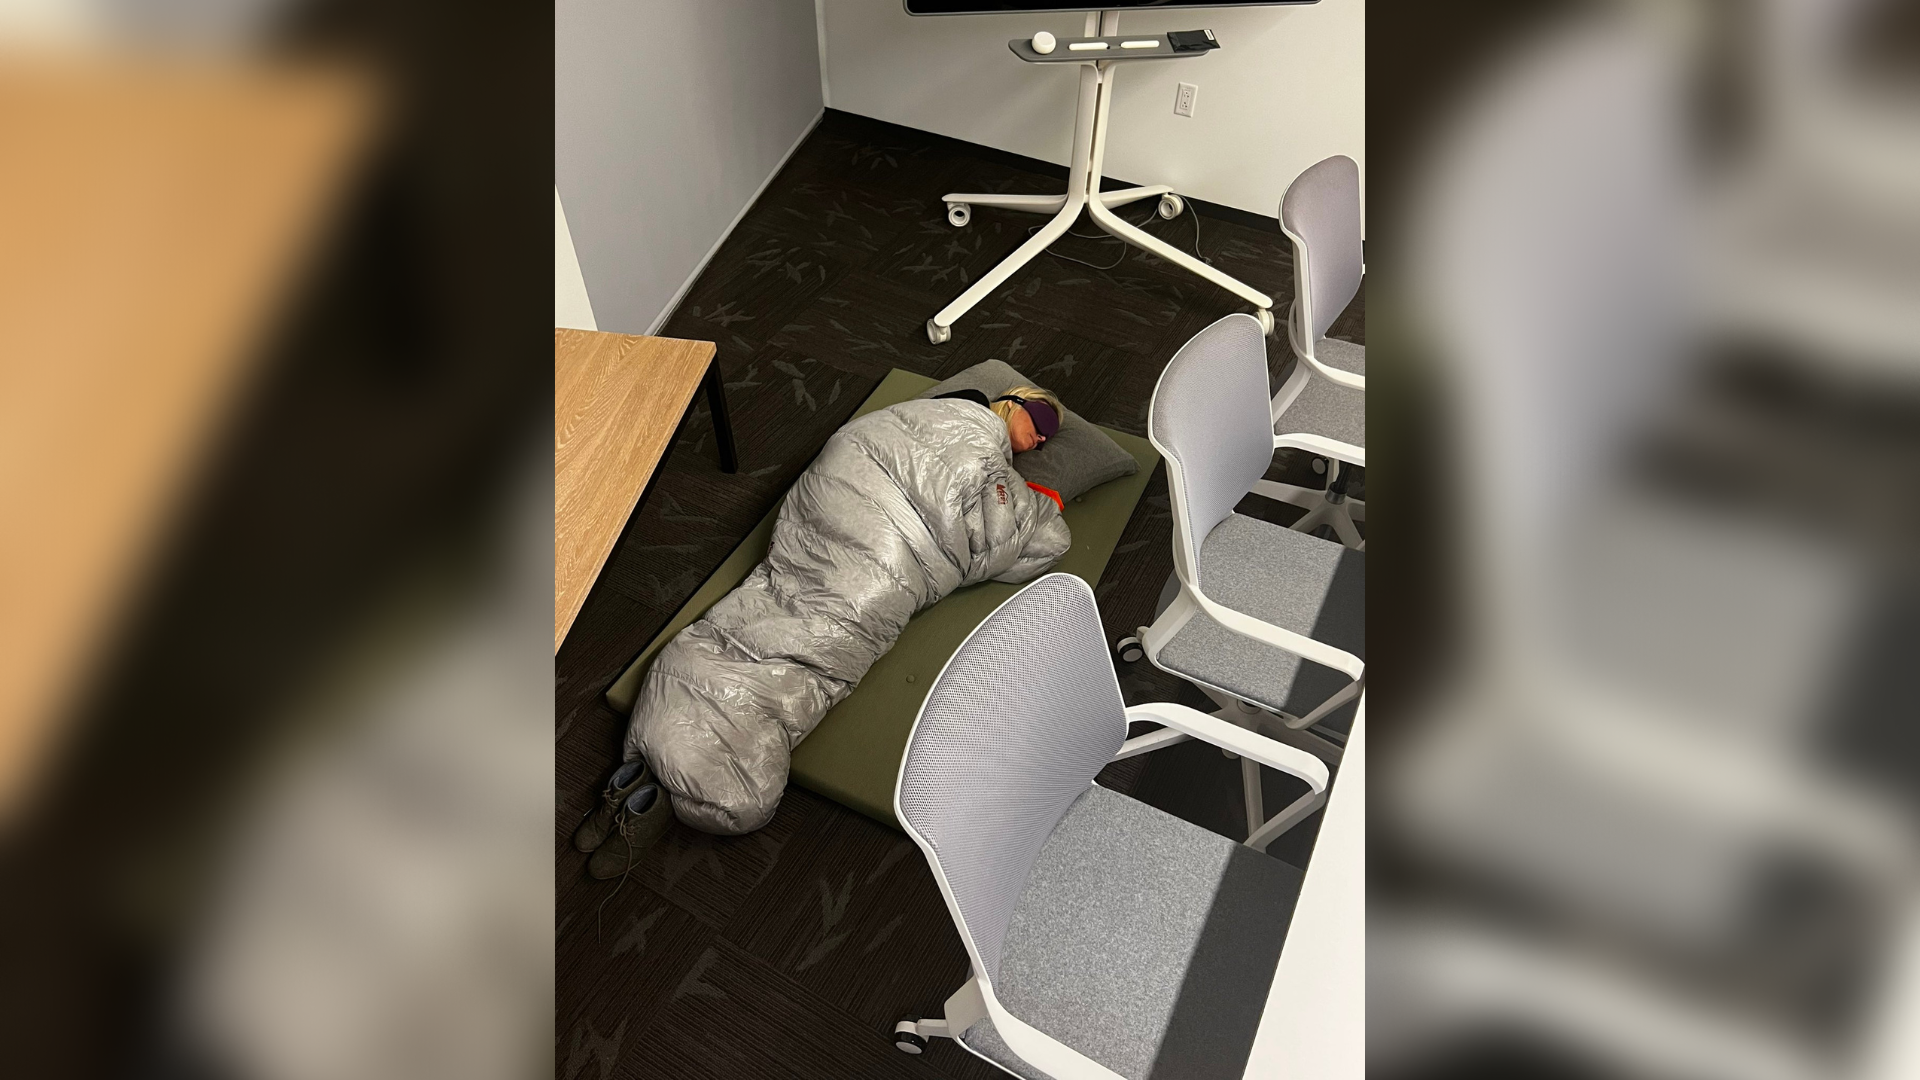 Empleados de Twitter forzados a dormir en la oficina tras llegada de Elon Musk